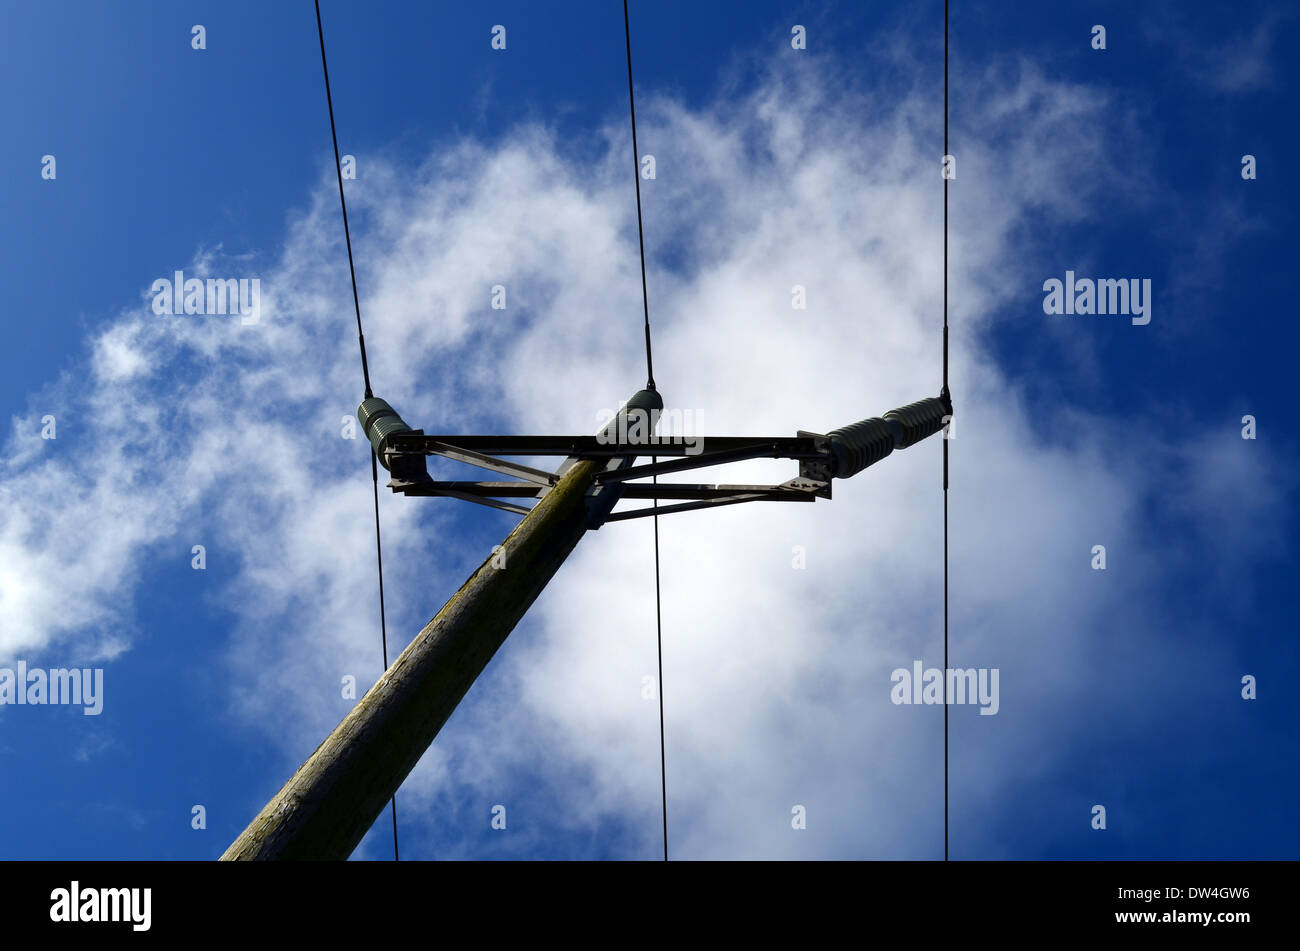 Electricity pole under blue sky. Stock Photo